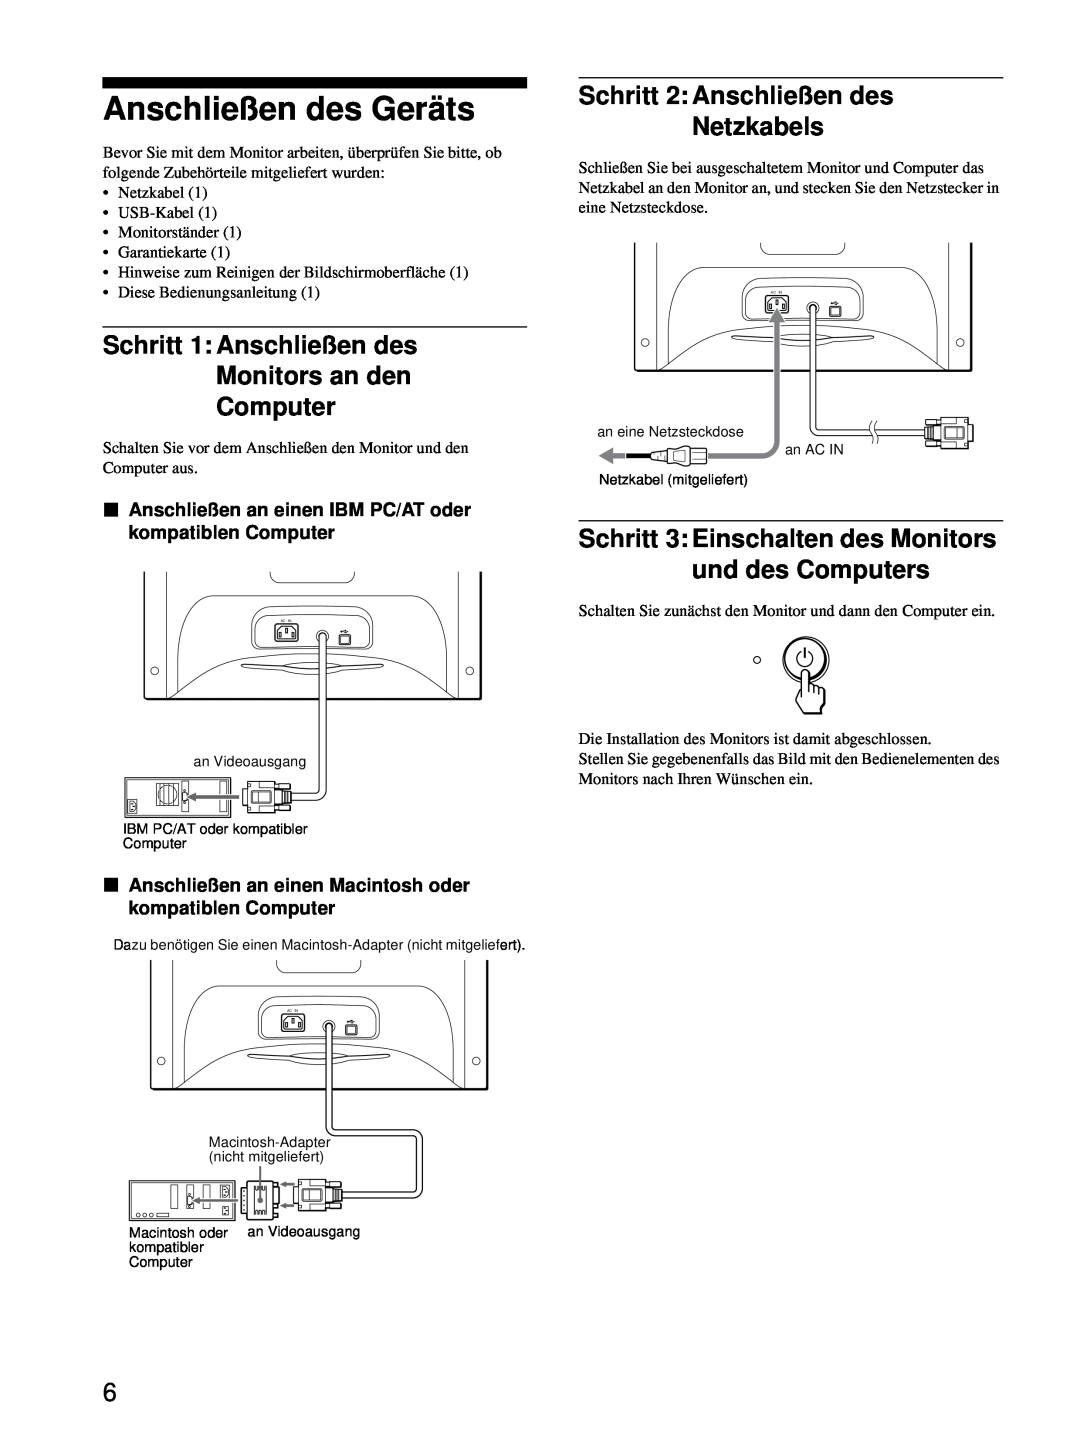 Sony HMD-A220 operating instructions Anschließen des Geräts, Schritt 2 Anschließen des Netzkabels 